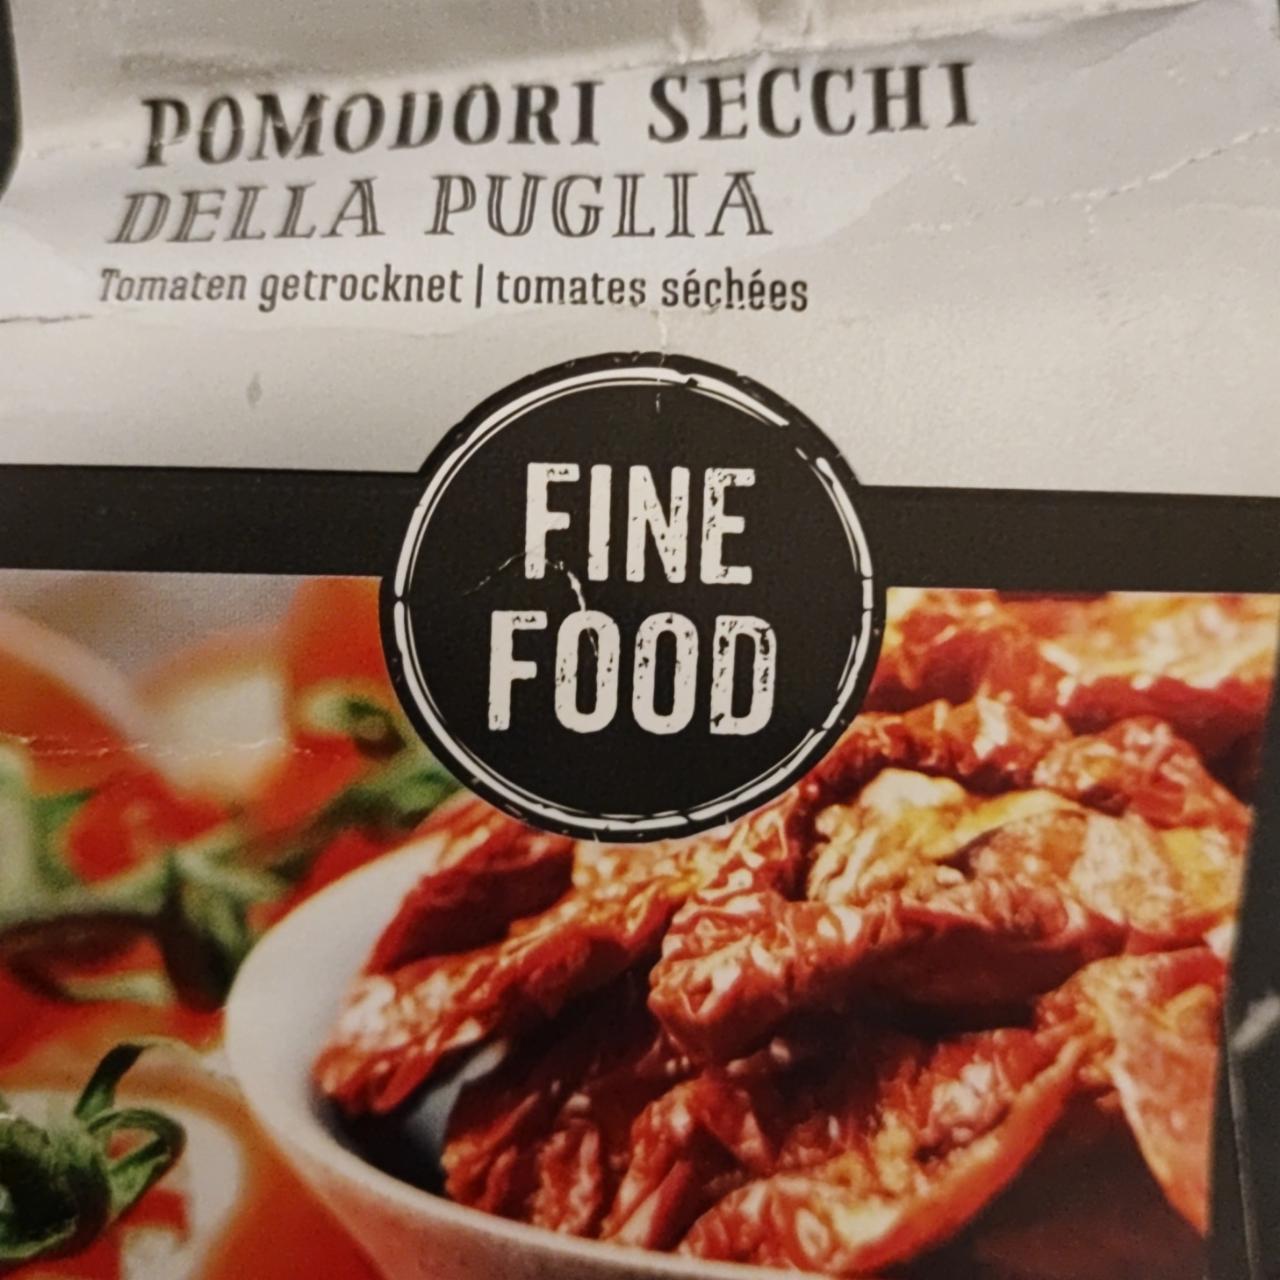 Fotografie - Pomodori secchi Della puglia Fine Food